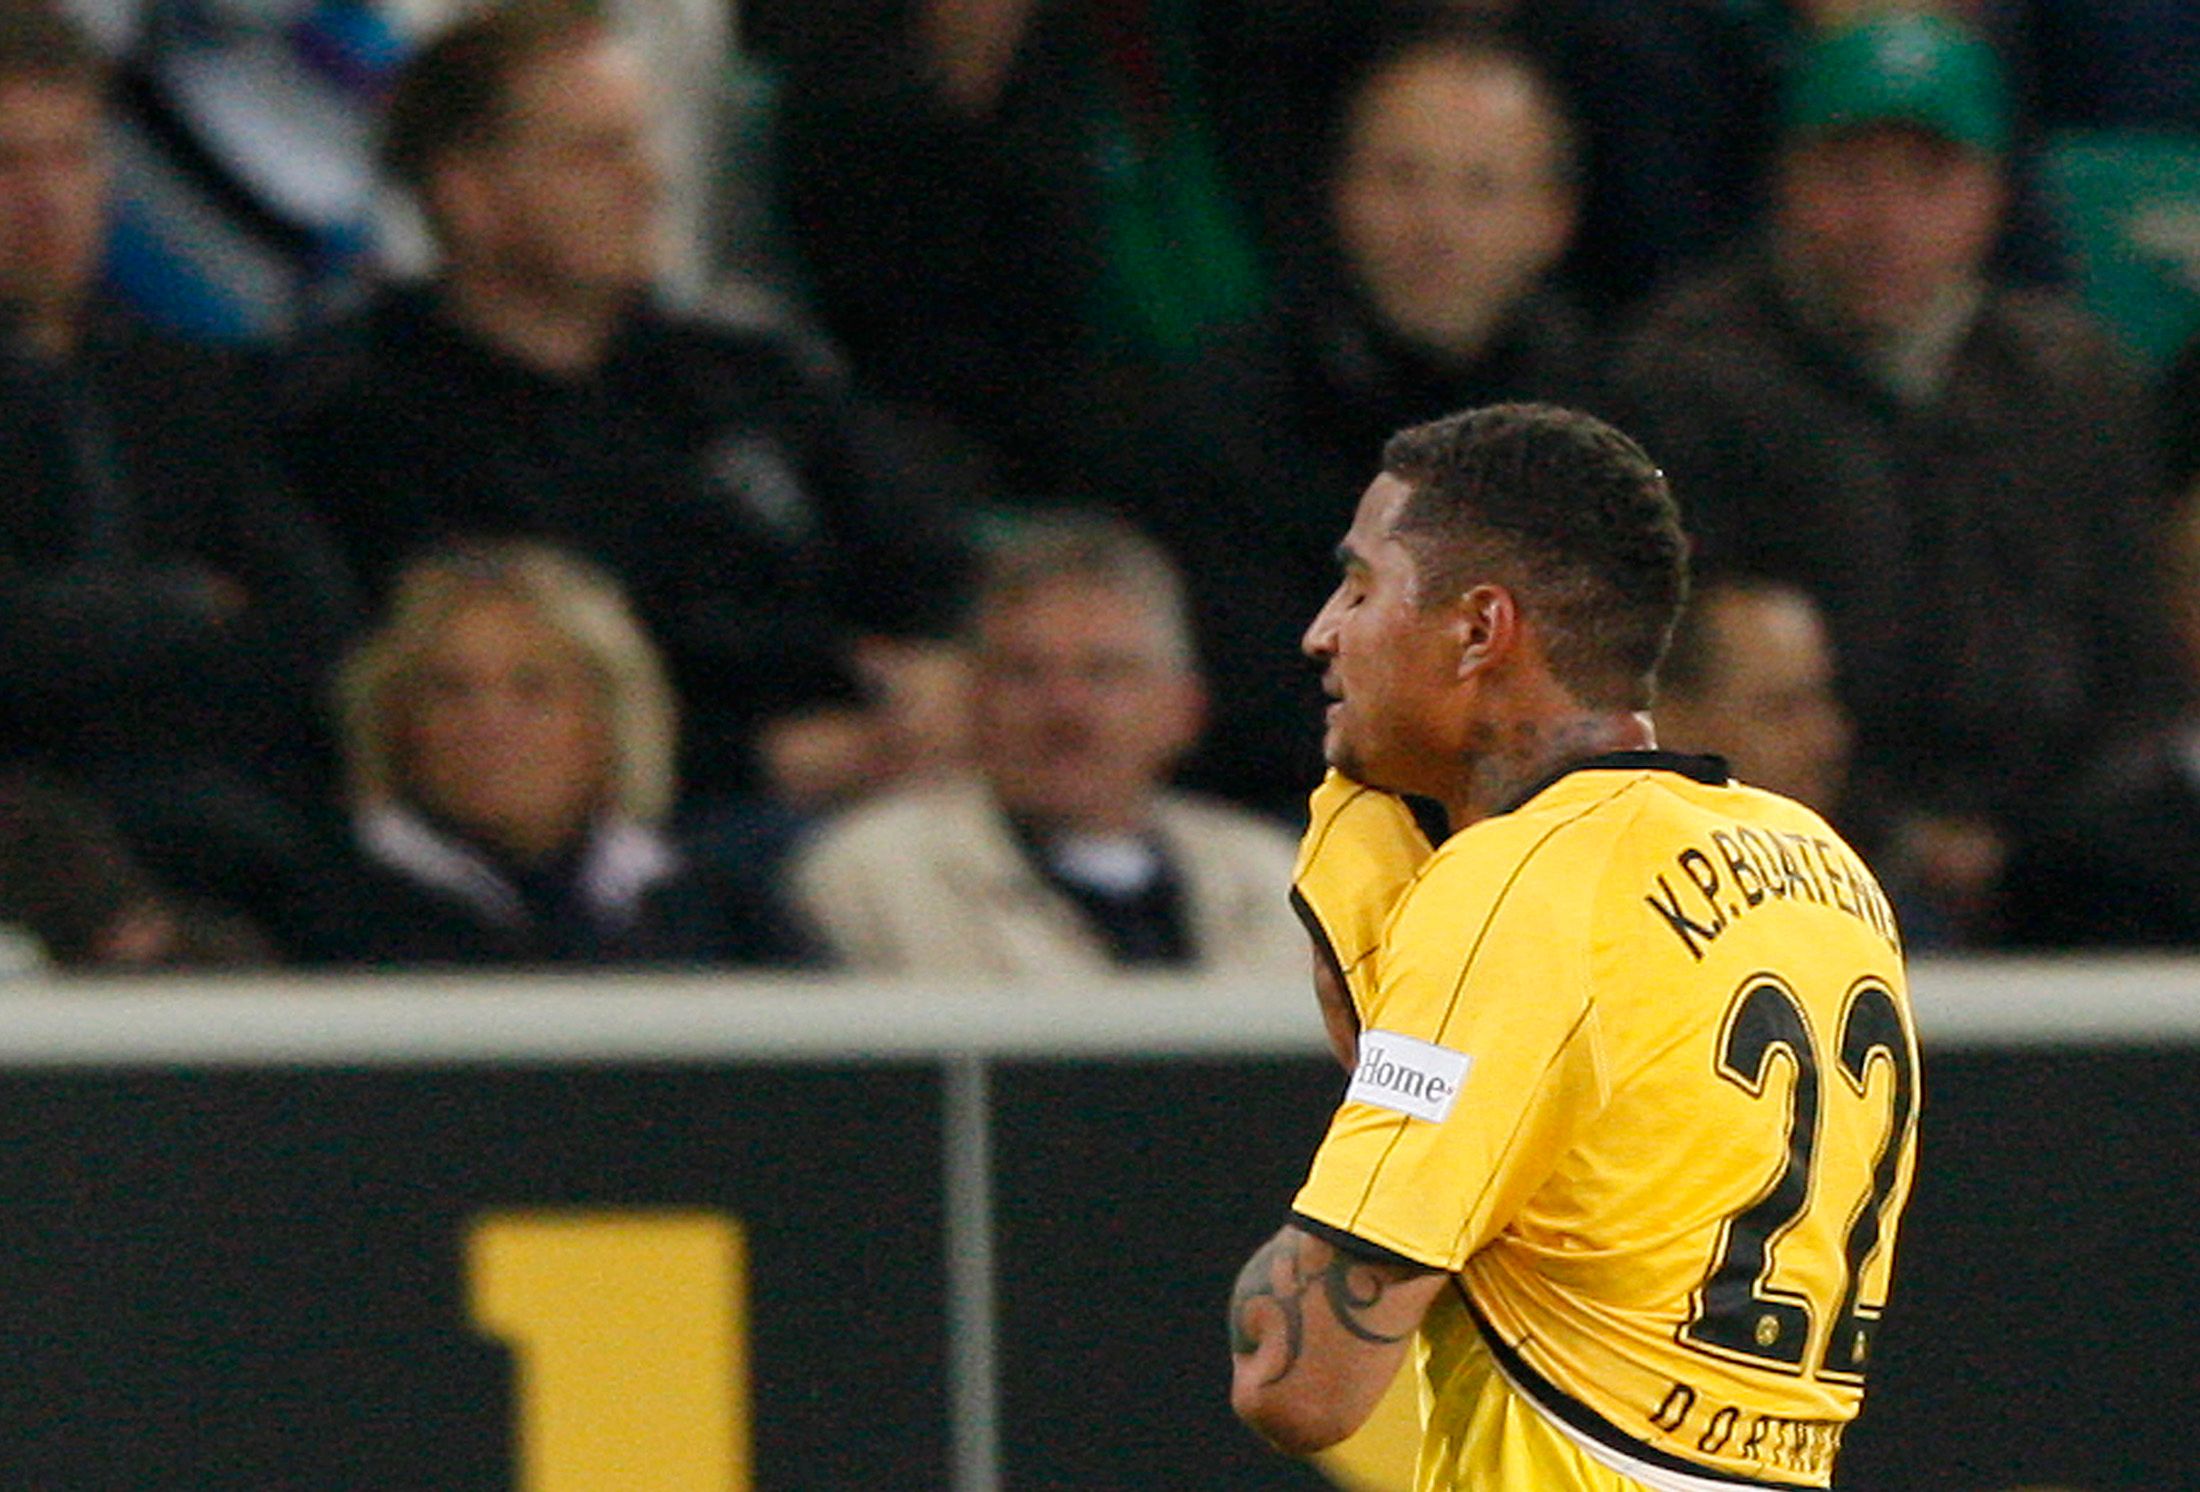 Boateng is sent off for Dortmund.